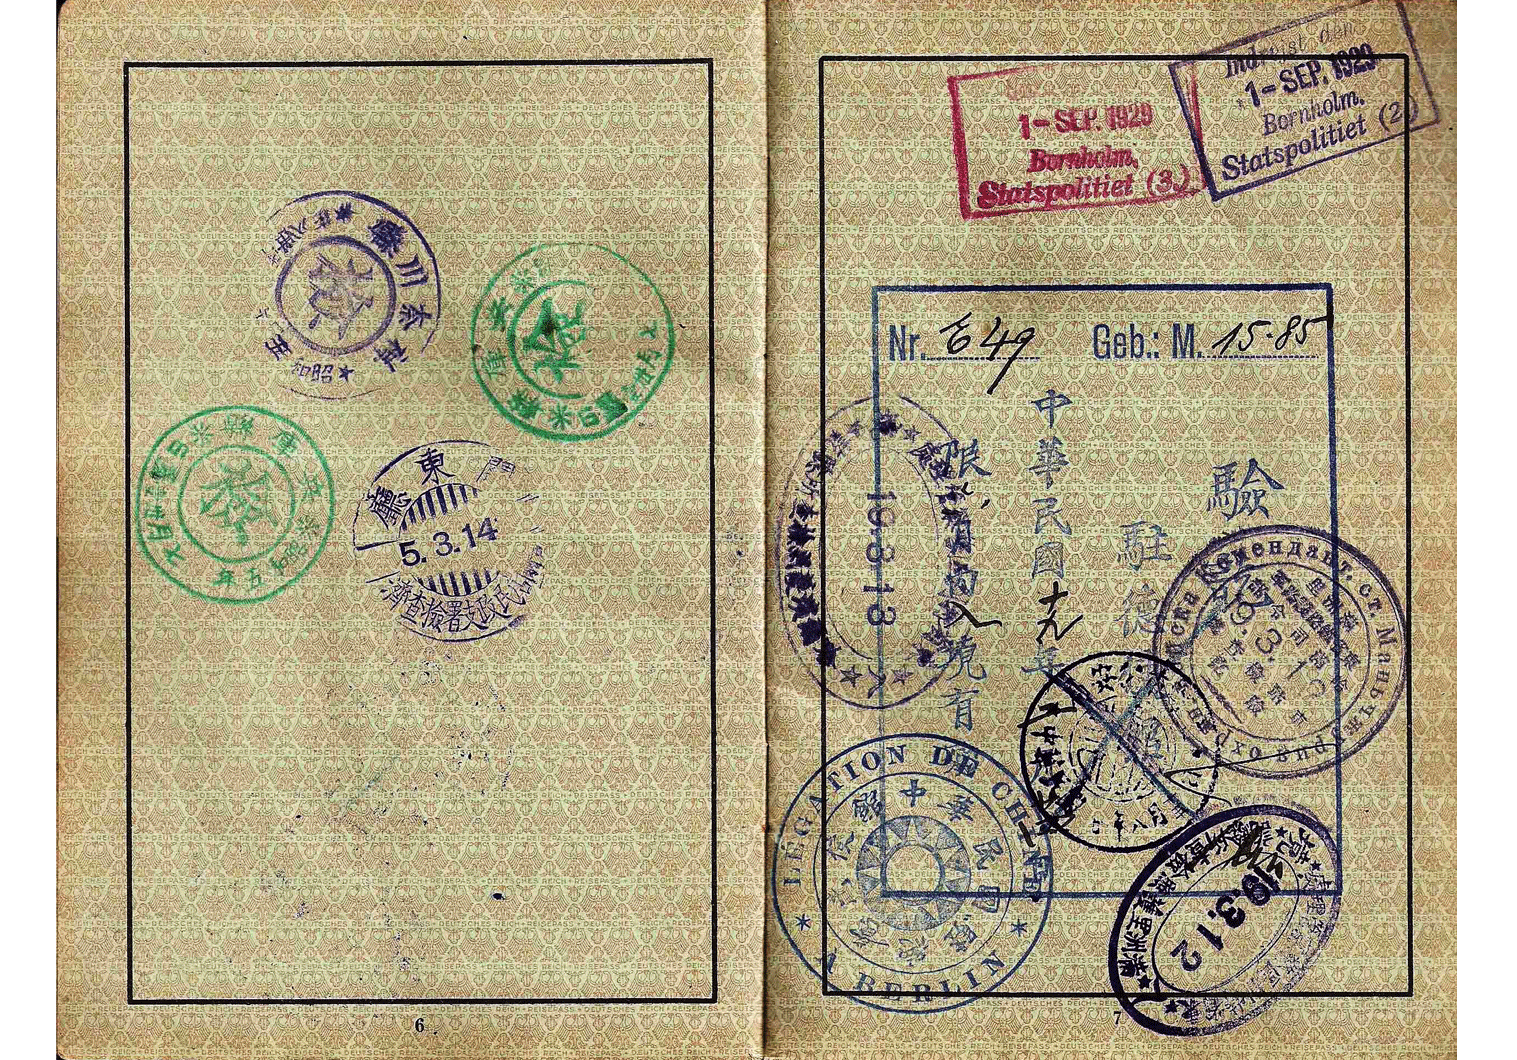 Manchurian visa